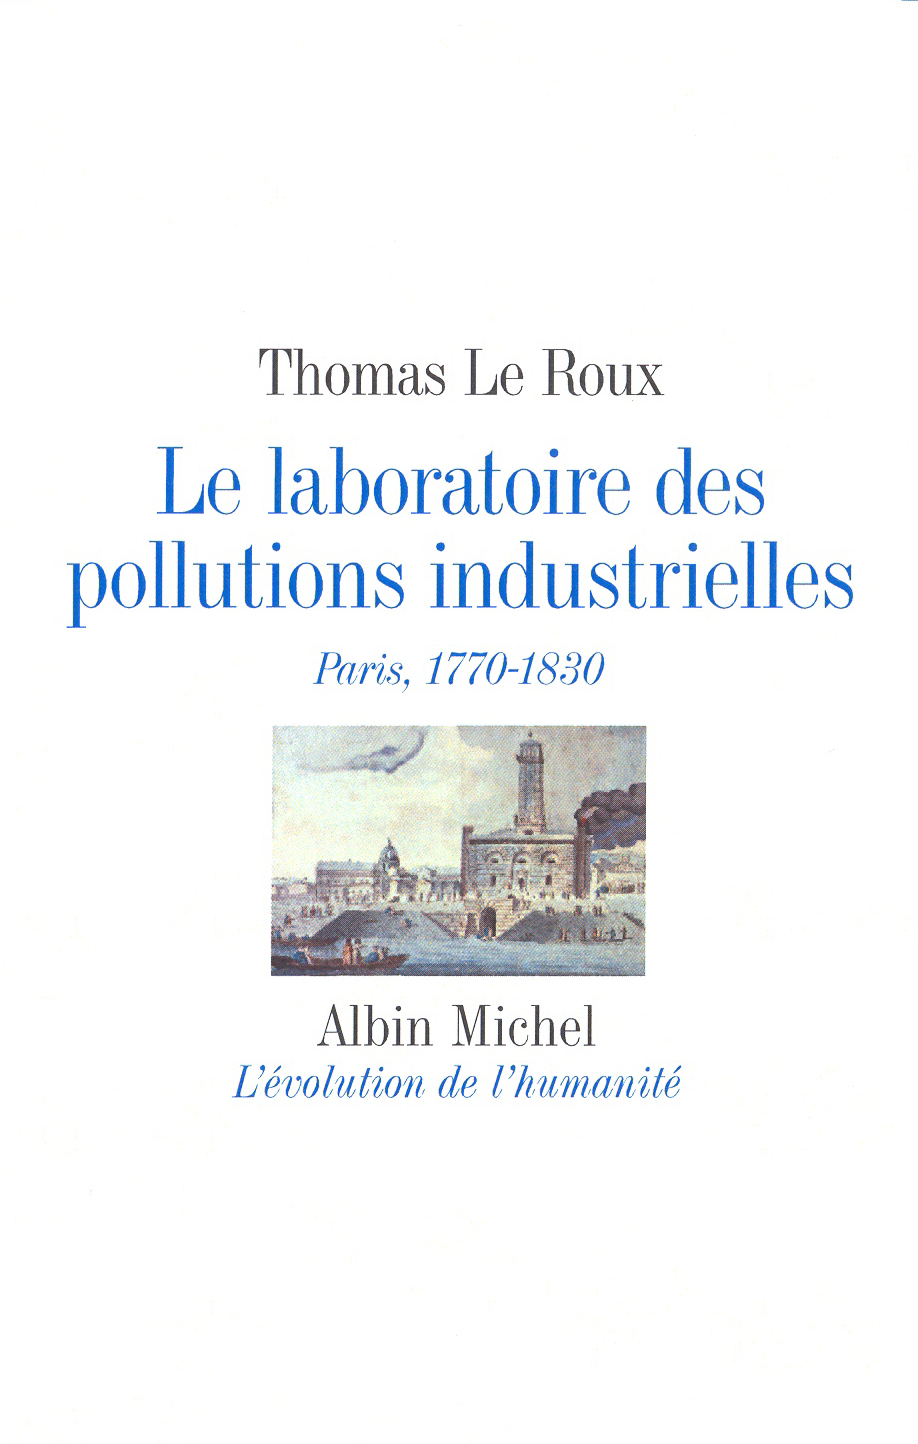 Le laboratoire des pollutions industrielles